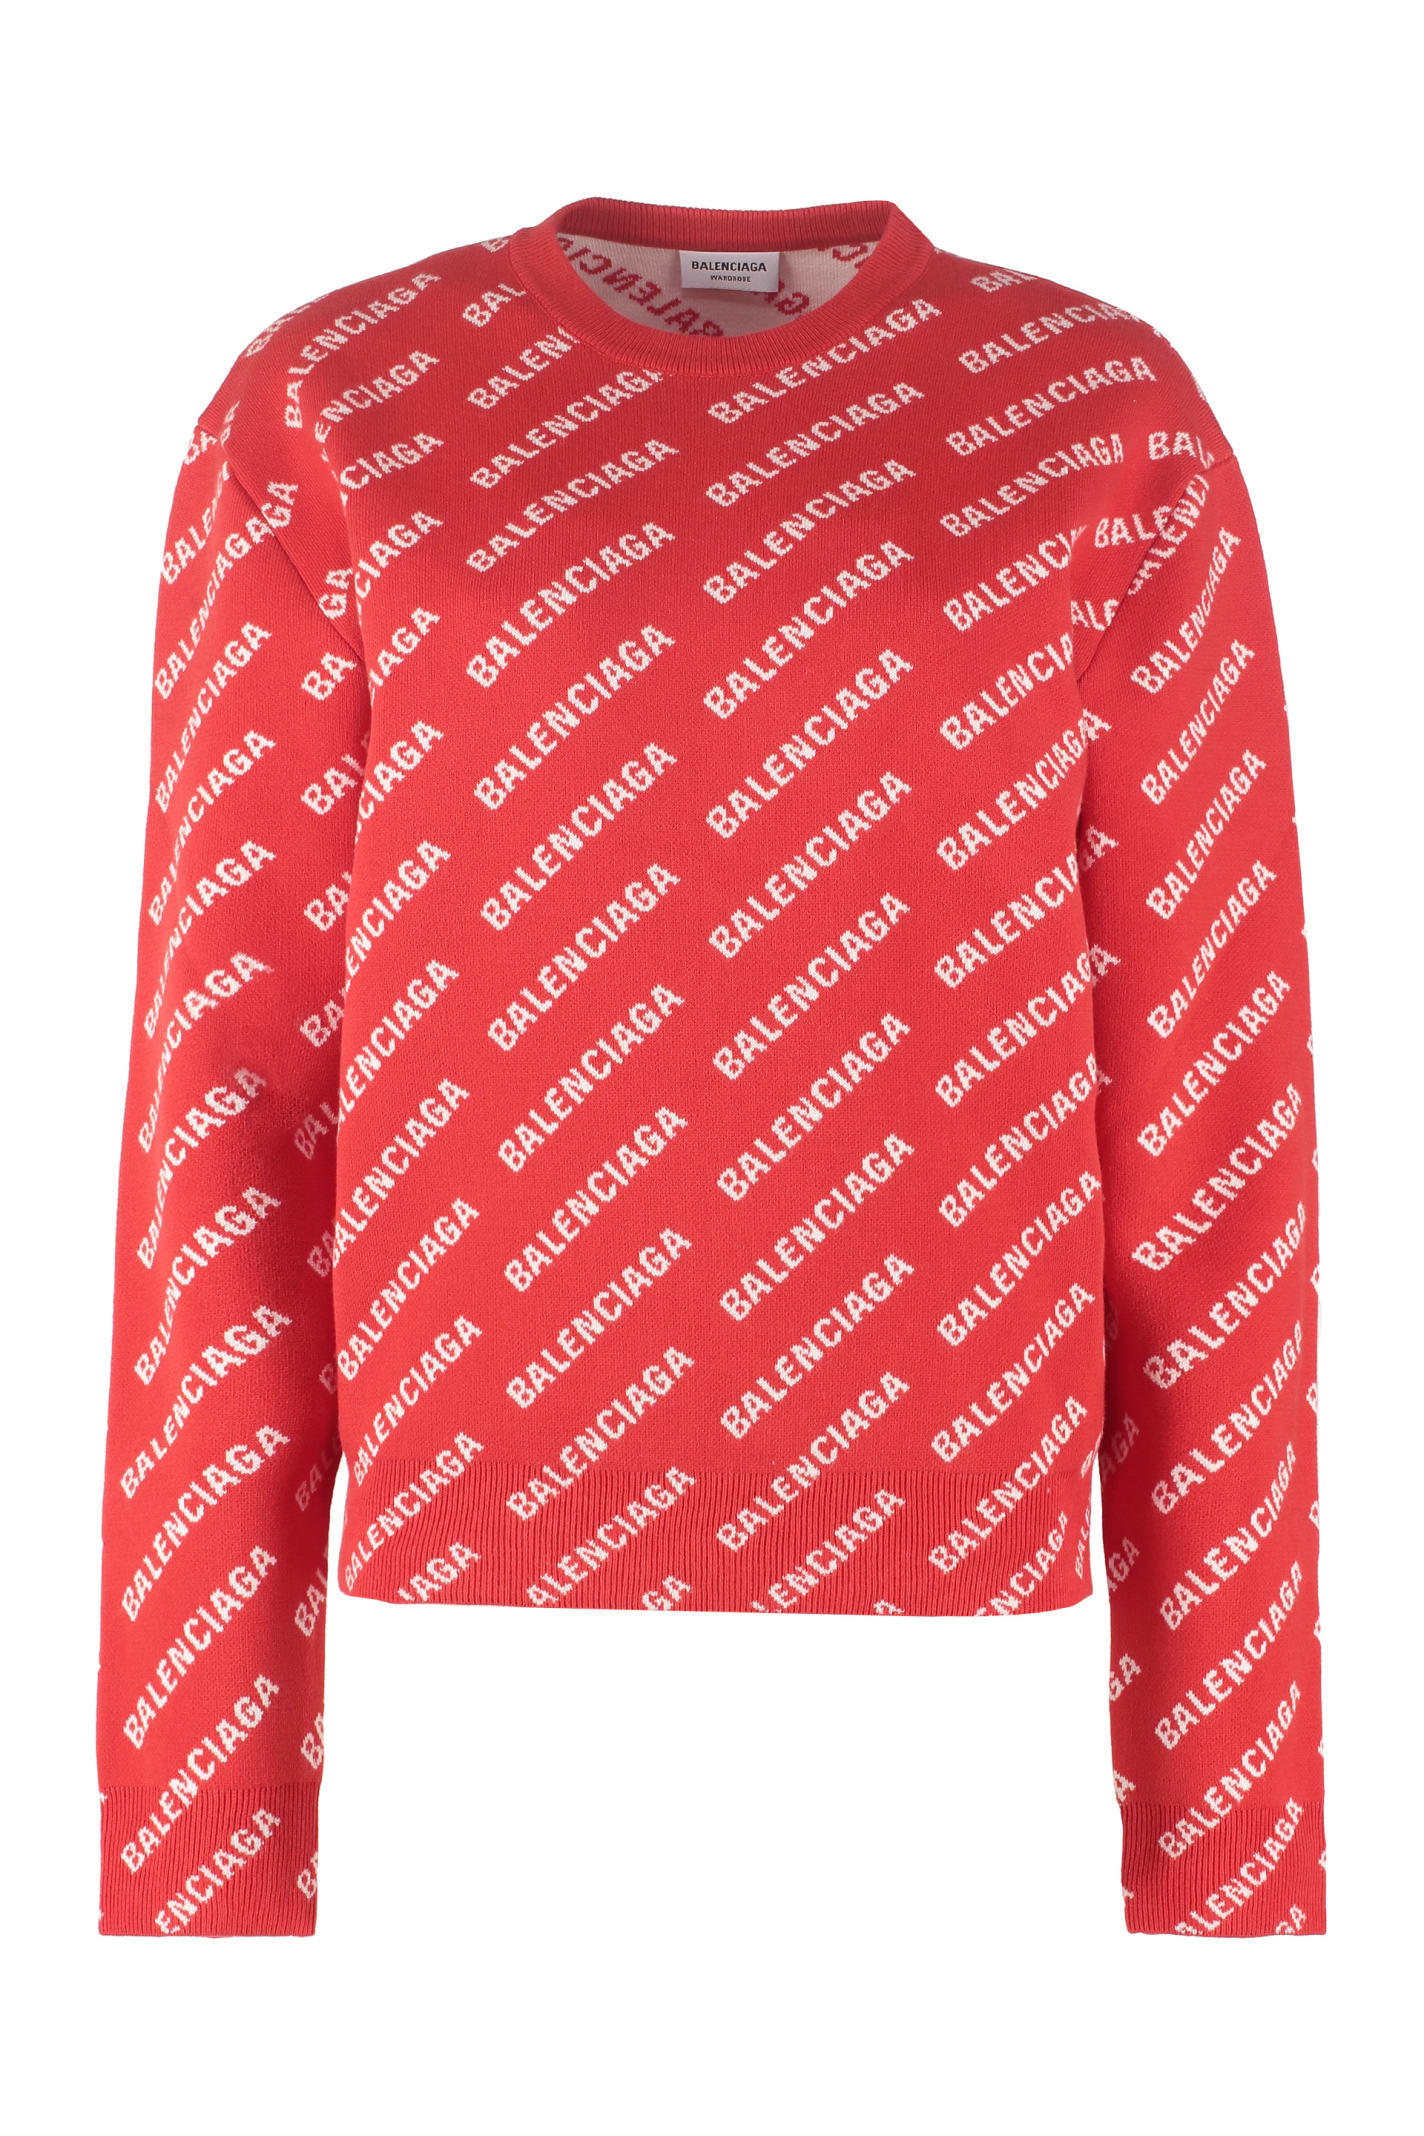 Balenciaga All-over Logo Crew-neck Sweater